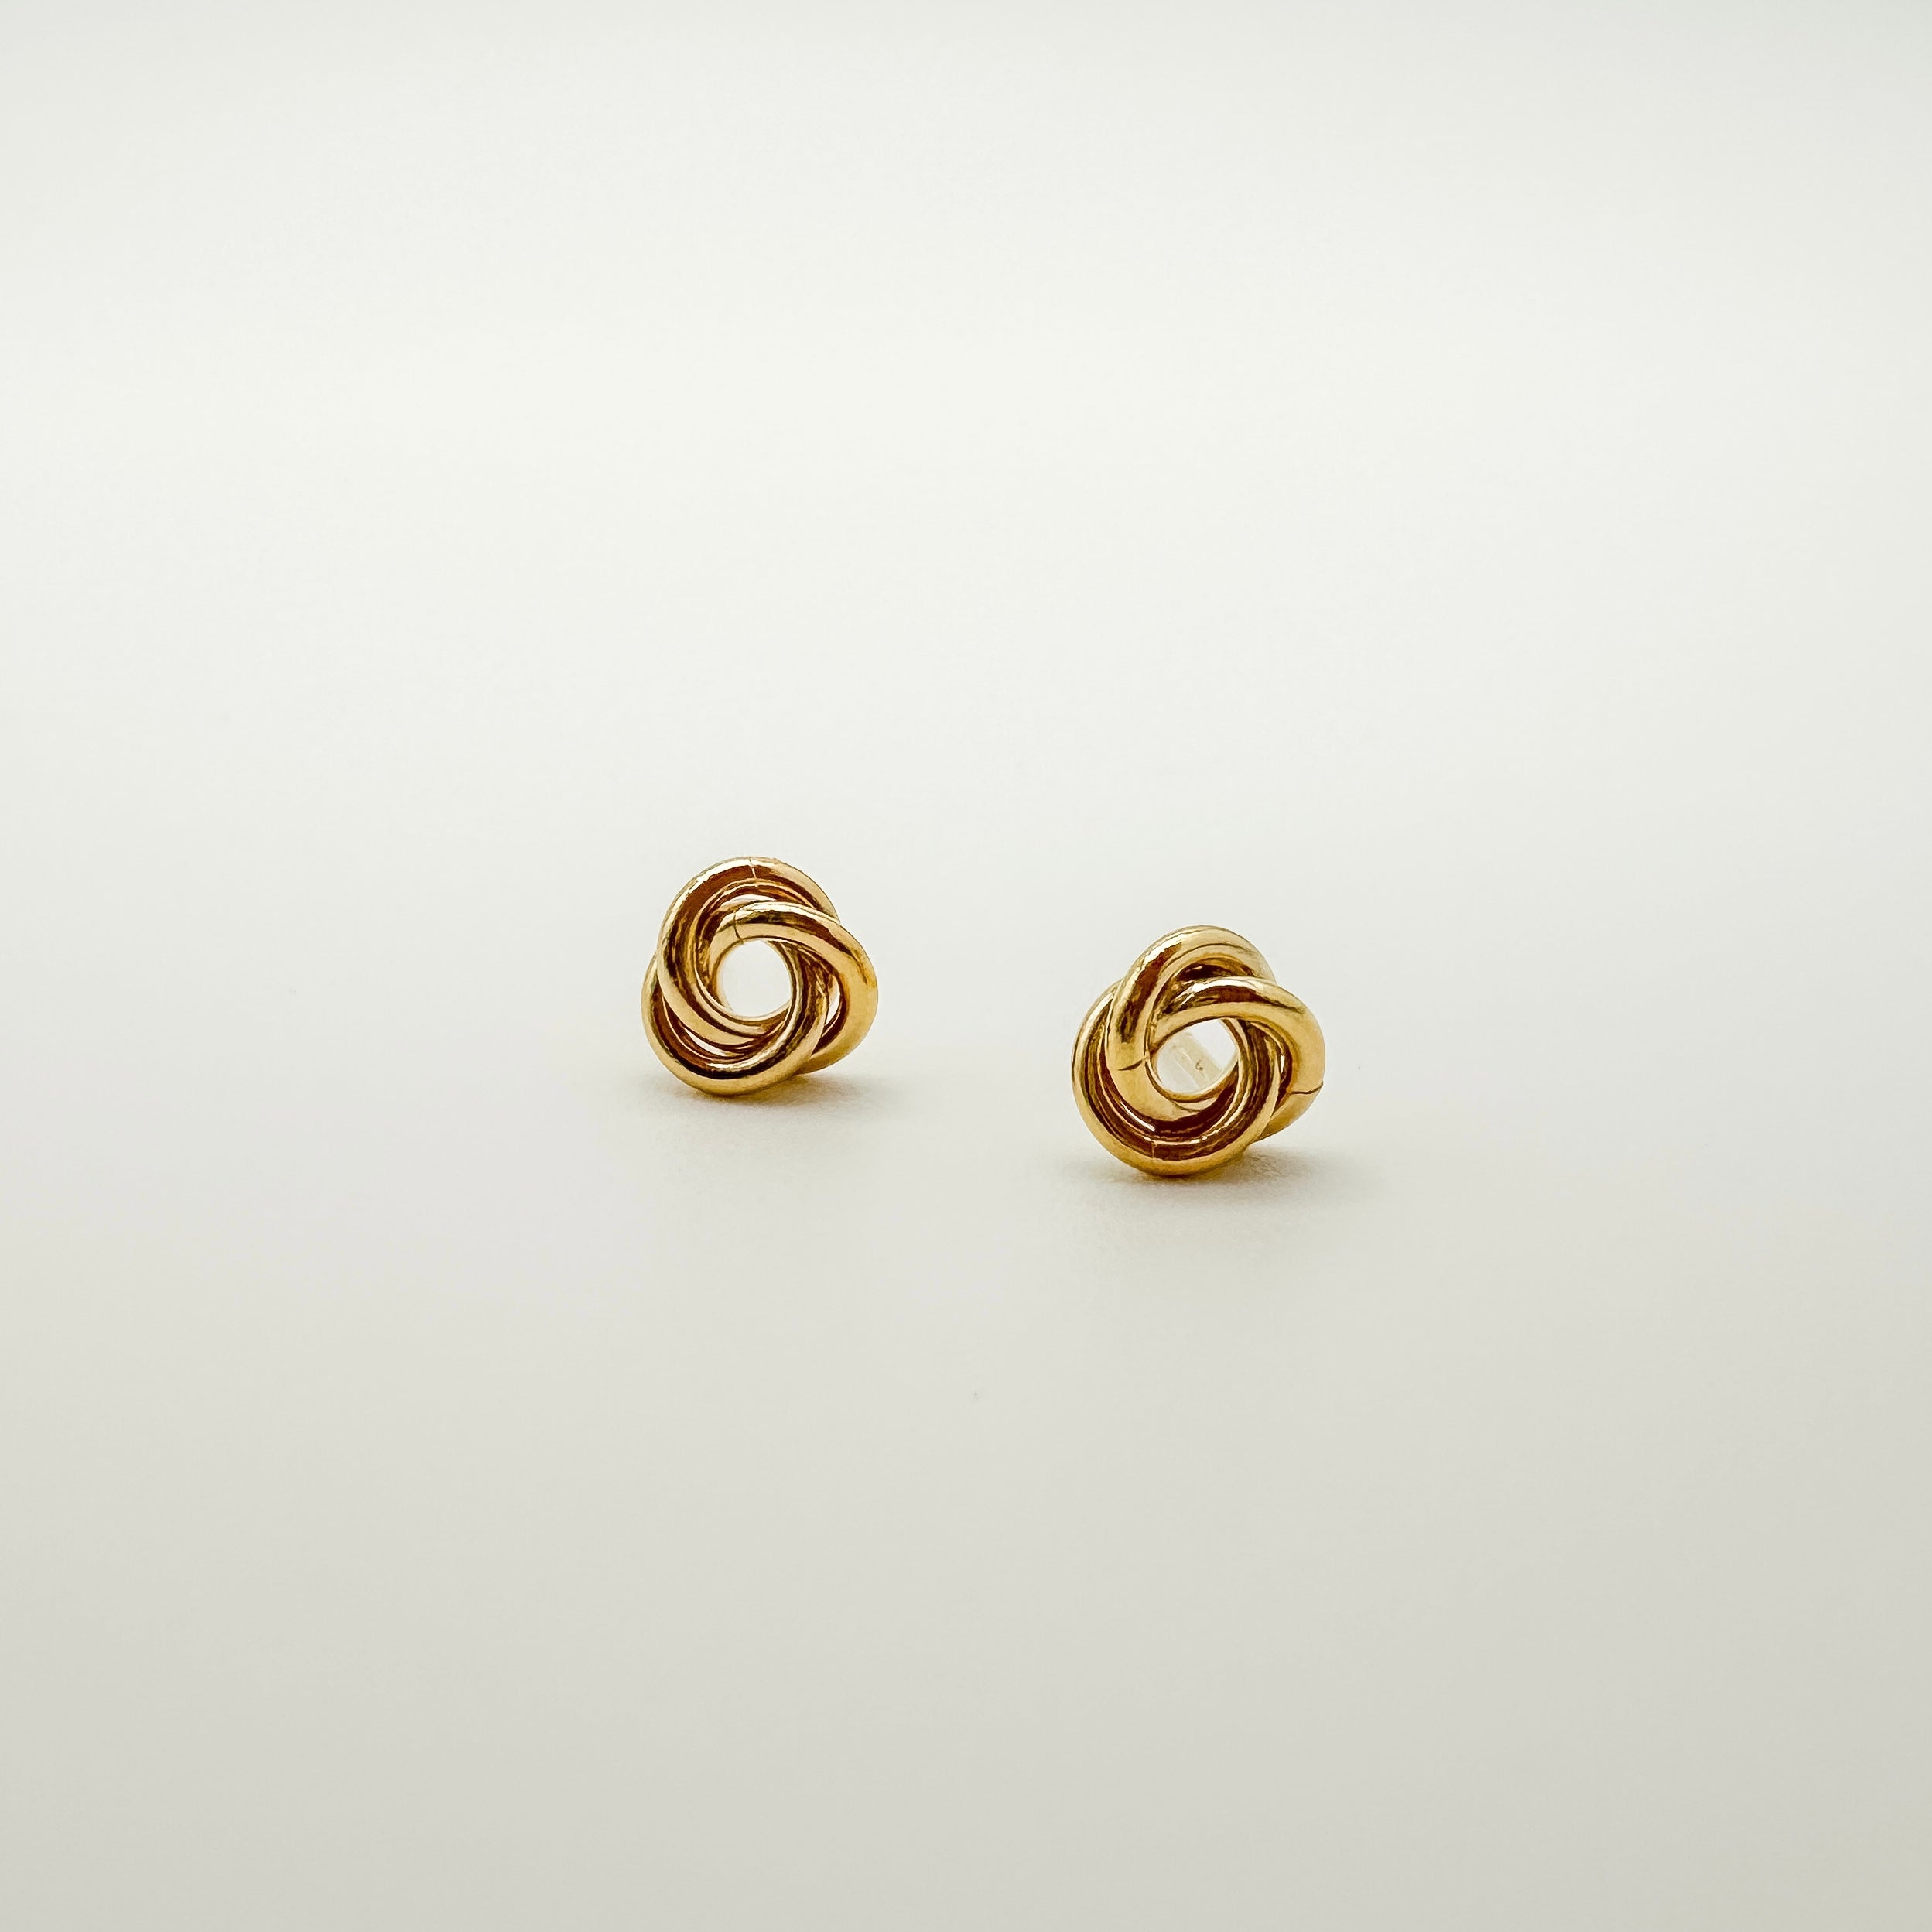 knot earrings, knot stud earrings, gold filled twisted knot earrings, preppy earrings, gold filled stud earrings, gold filled earrings